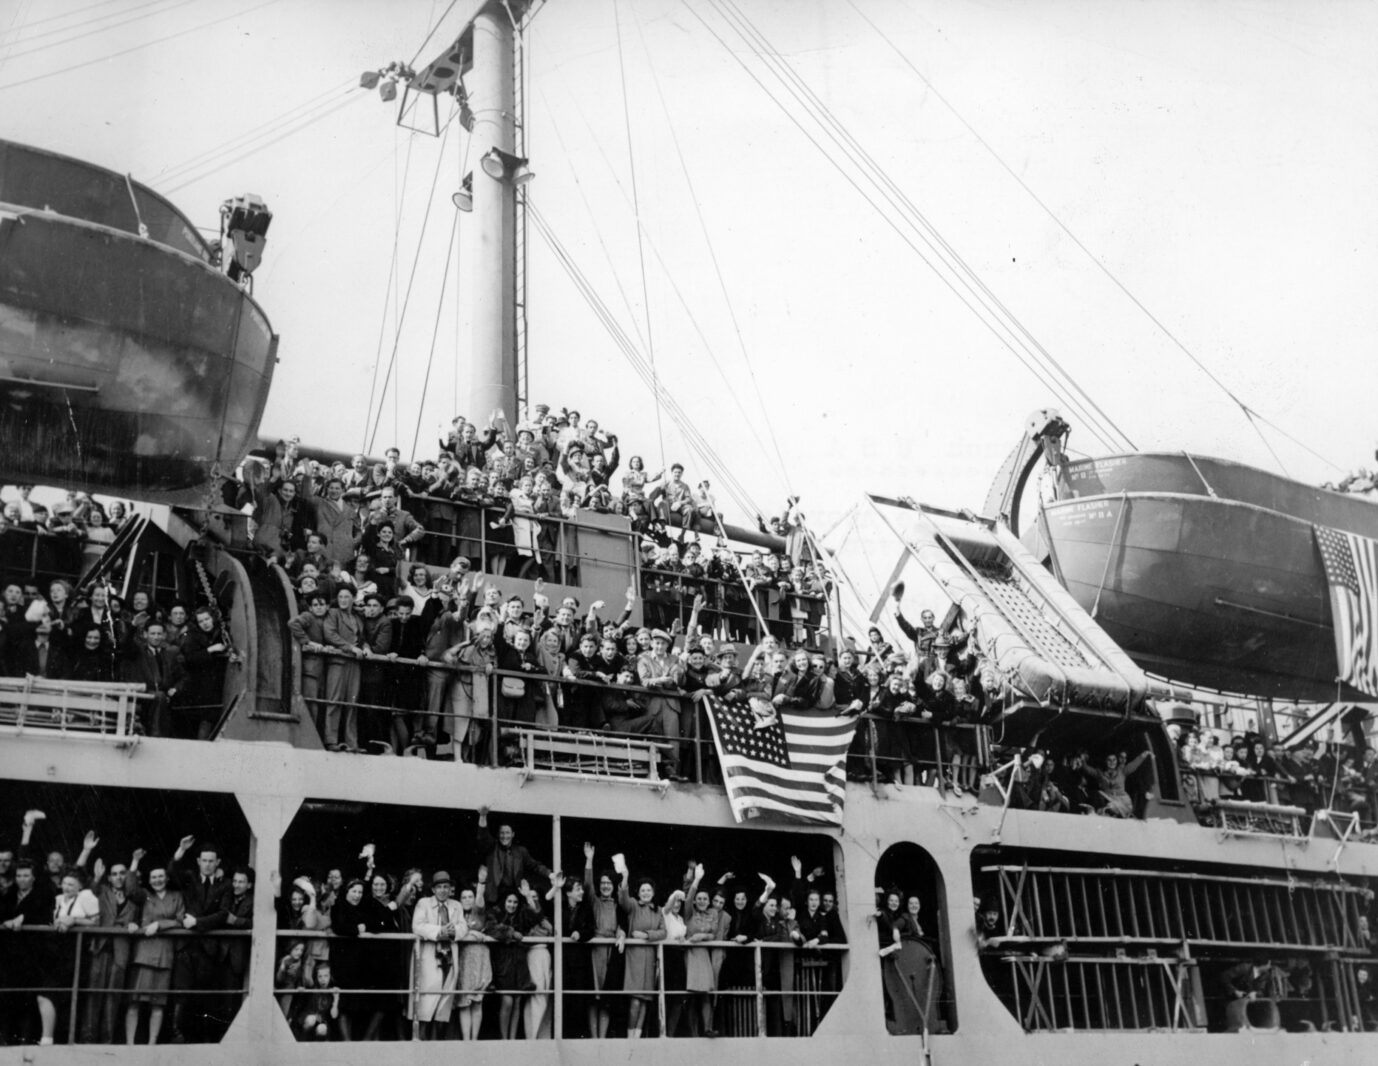 Displaced Persons verlassen 1946 Deutschland in Richtung USA, vor allem Vertriebene aus Osteuropa suchten in Übersee eine neue Heimat Foto: picture-alliance / dpa | UPI